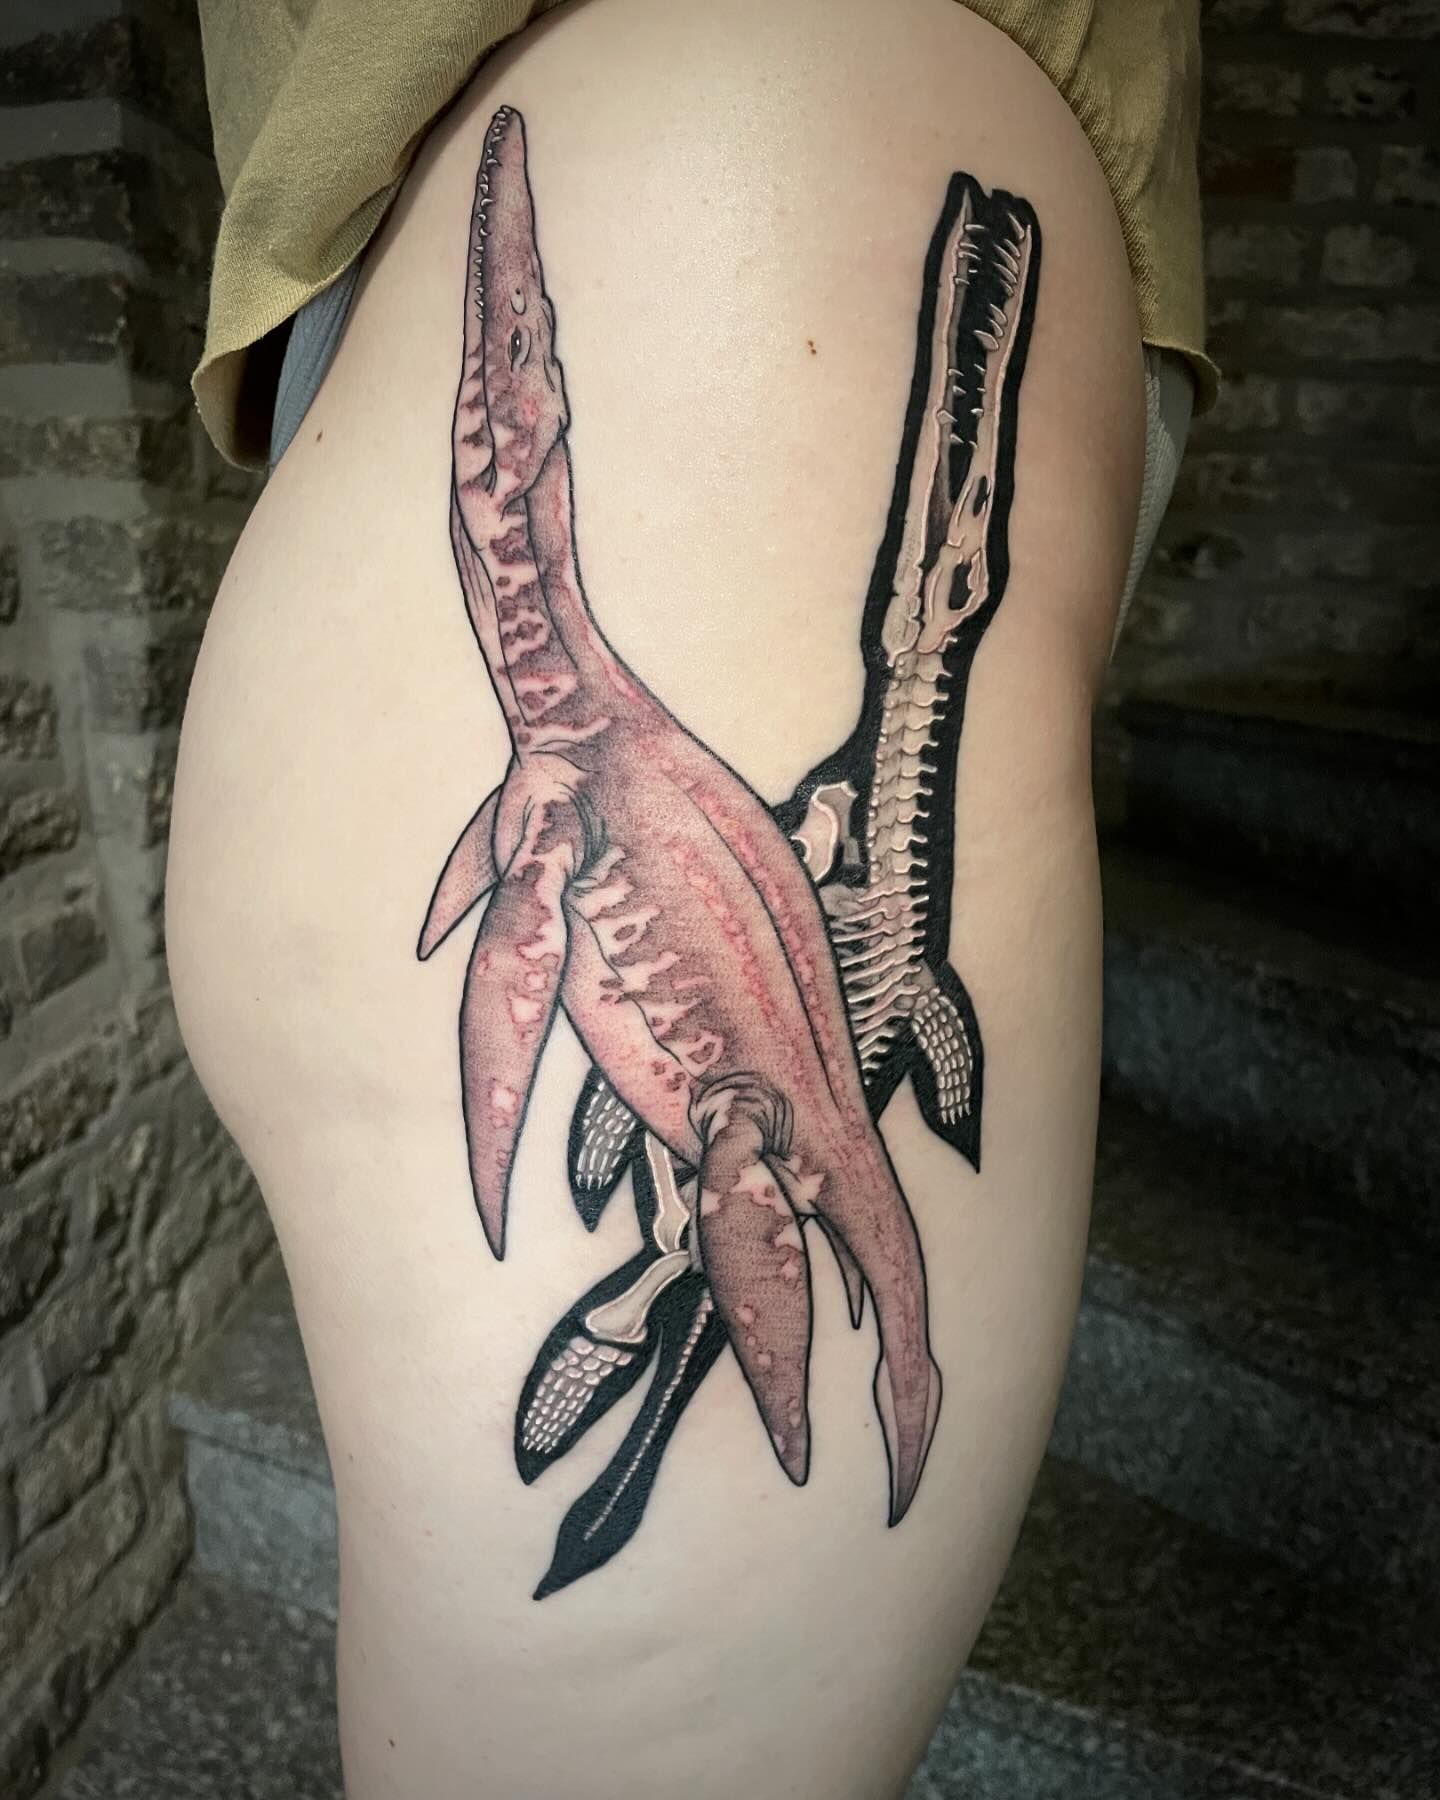 Liopleurodons 
•
•
•
•
#inked #ink #inkedgirls #tattoos #tattoo #tatts #ladytatt